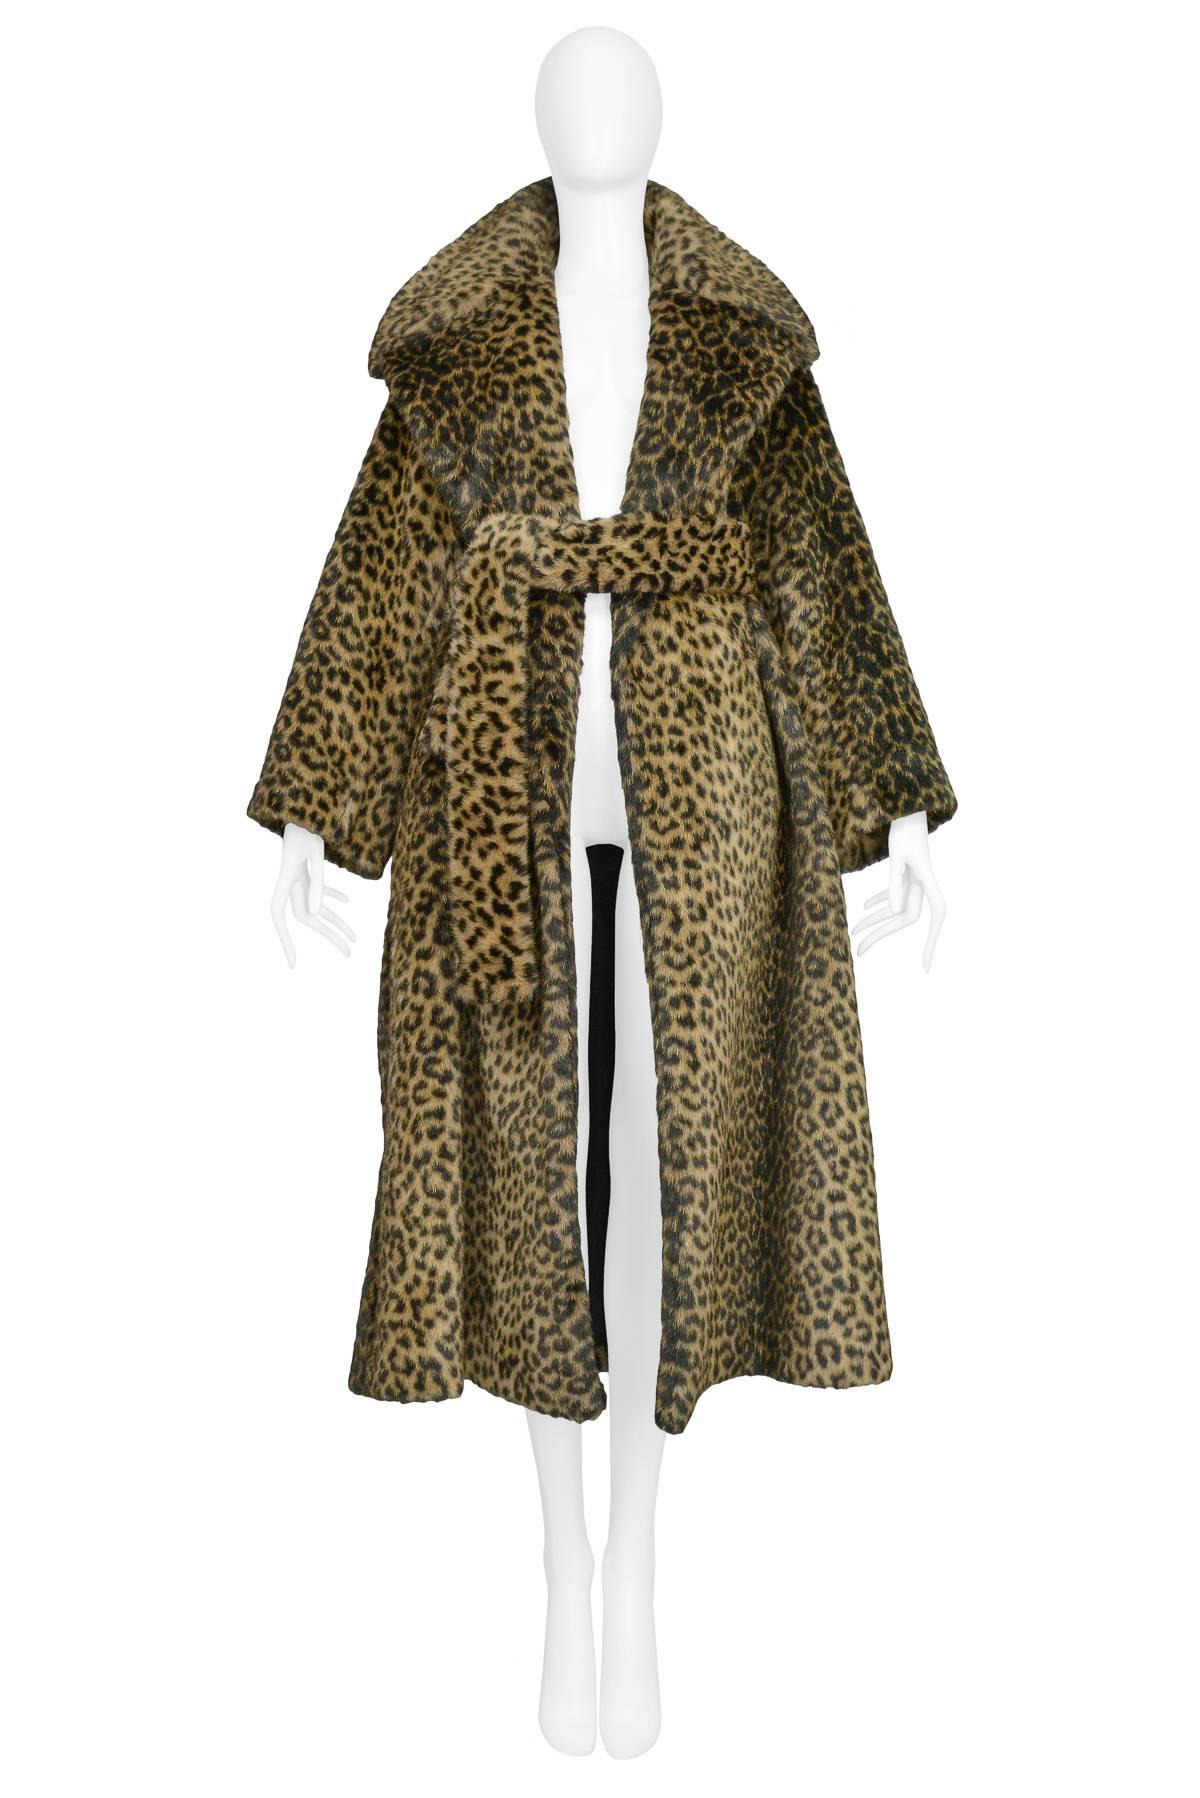 Black Iconic Alaia Leopard Faux Fur Coat 1991 